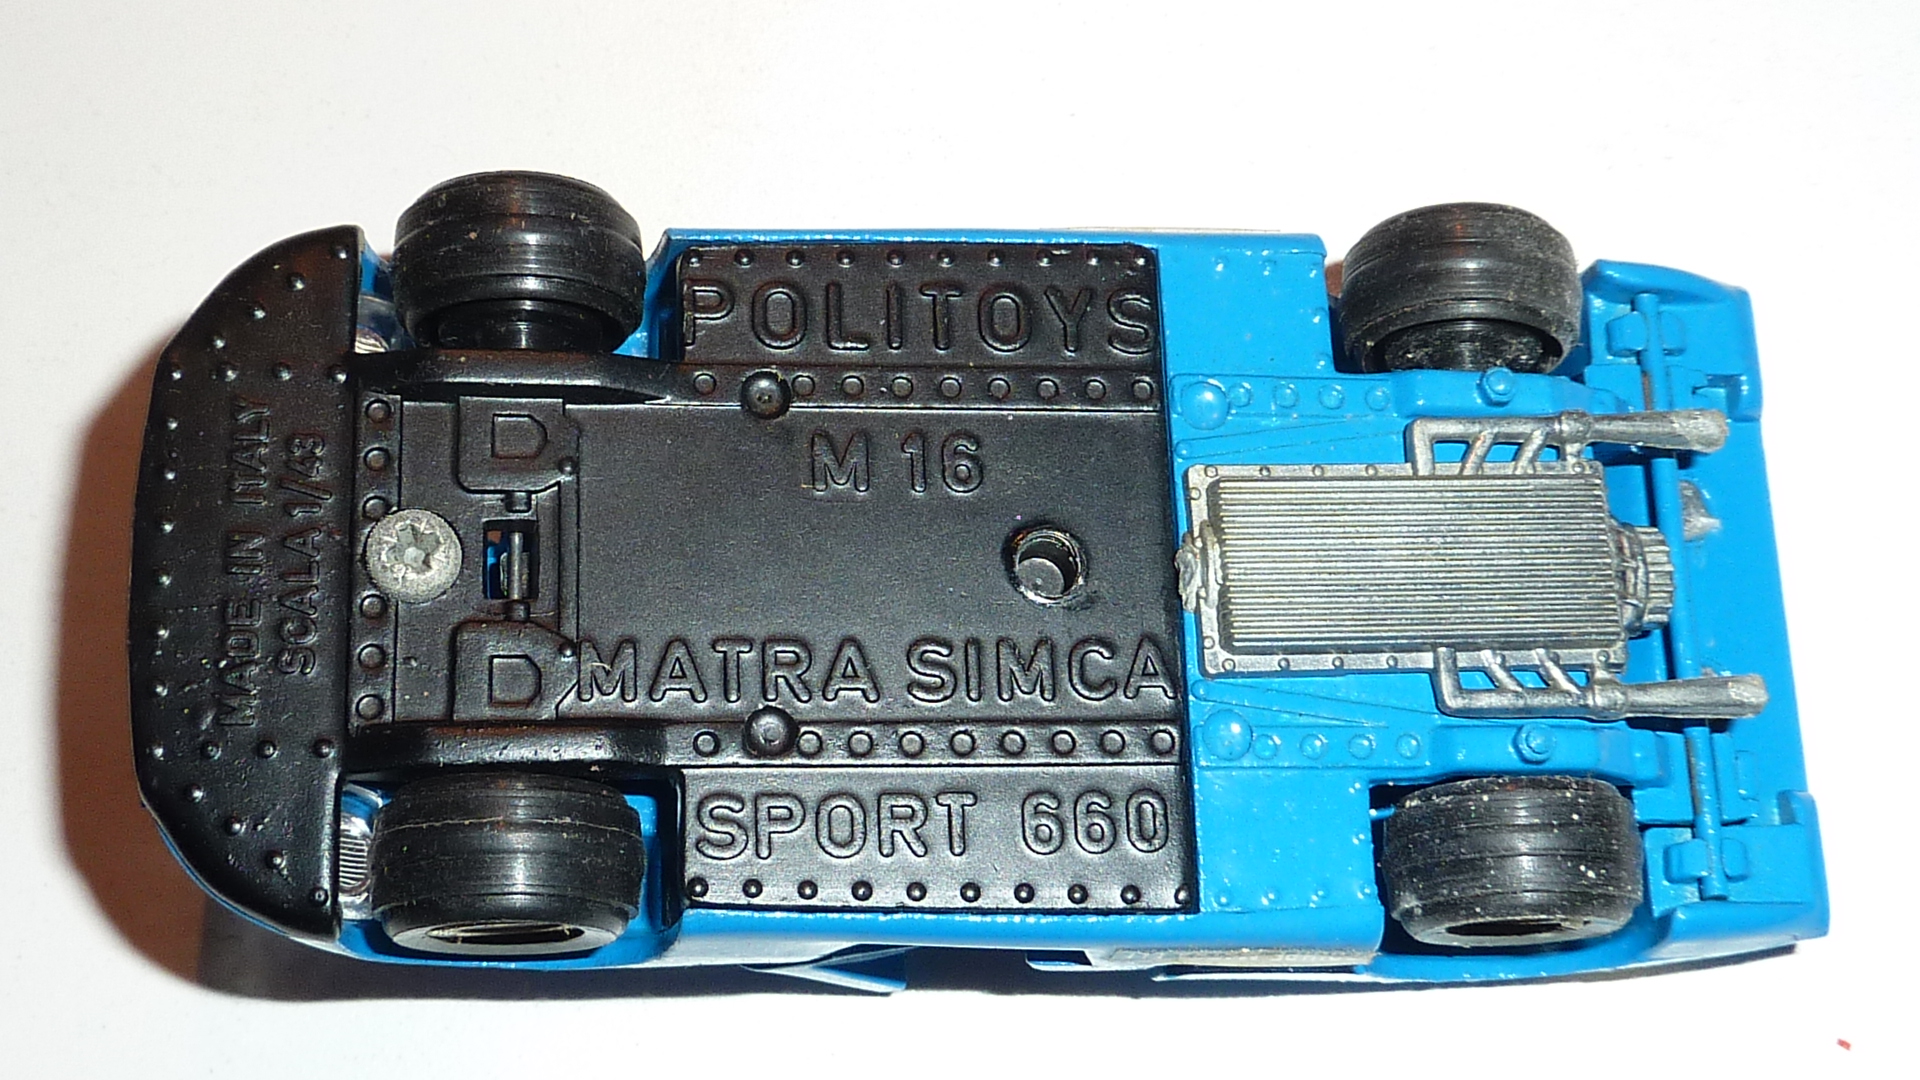 MATRA SIMCA SPORT 660